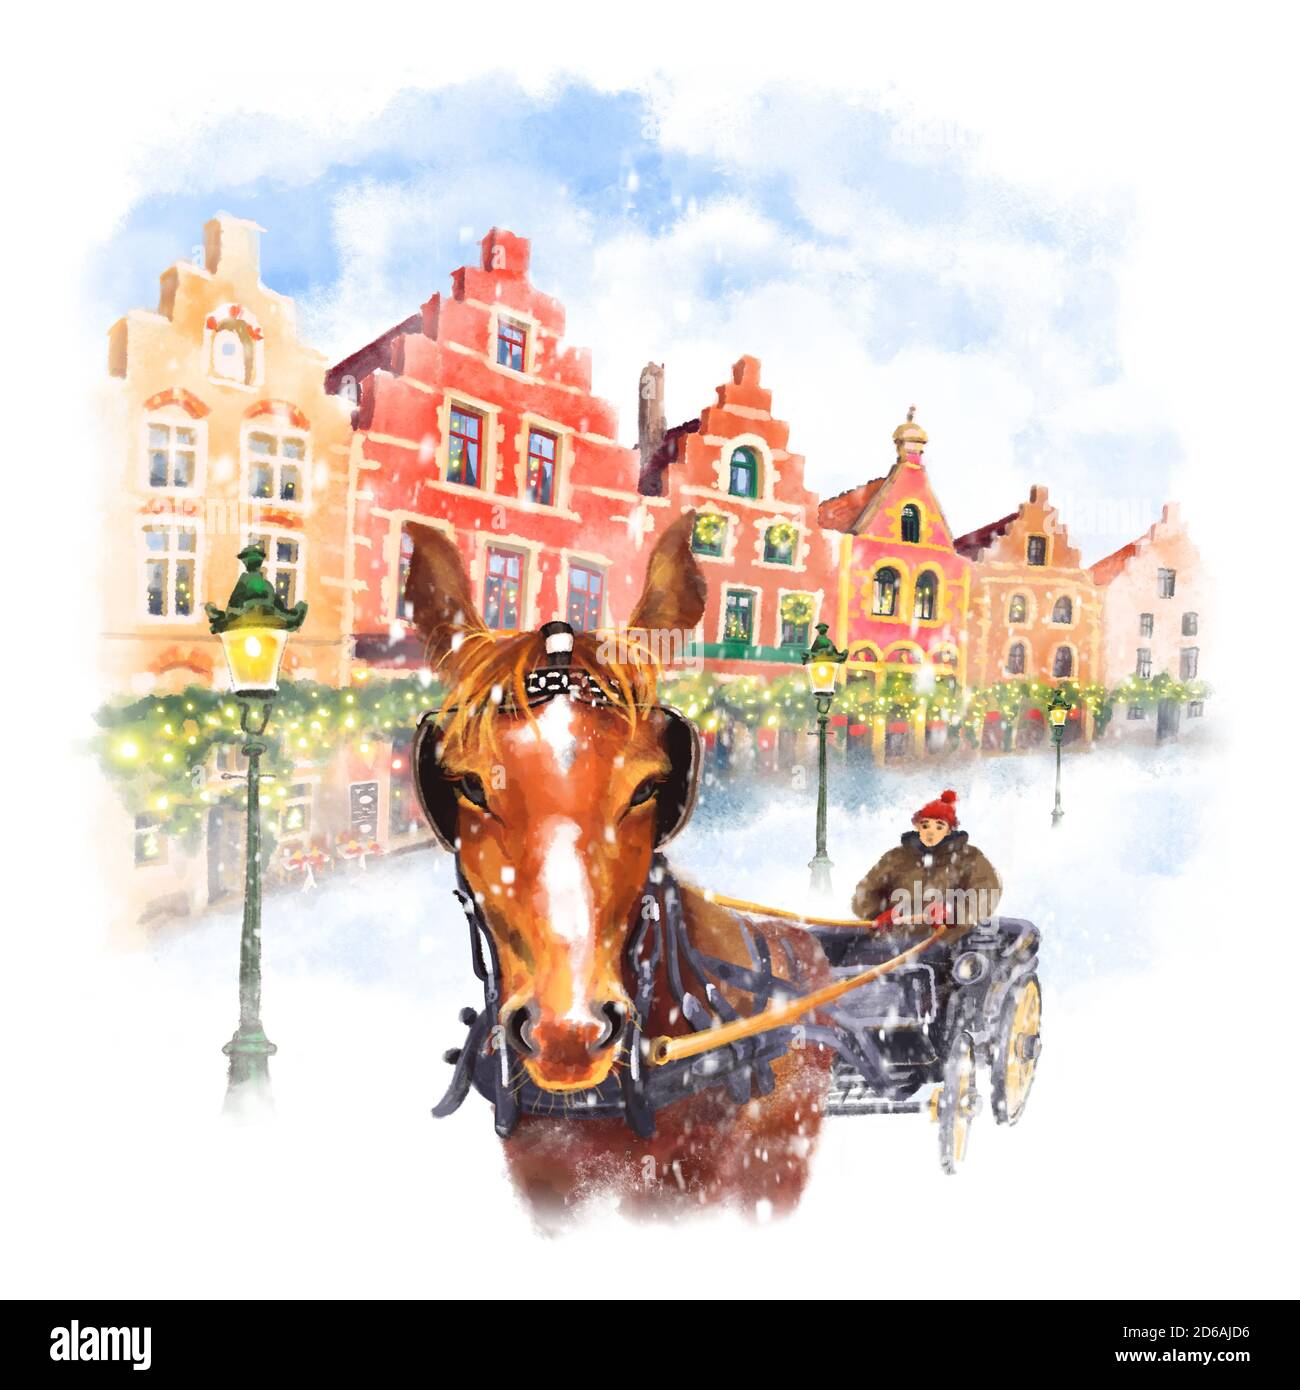 Carrozza a cavallo in piazza Christmas Markt a Brugge, Belgio. Disegno digitale come acquerello Foto Stock